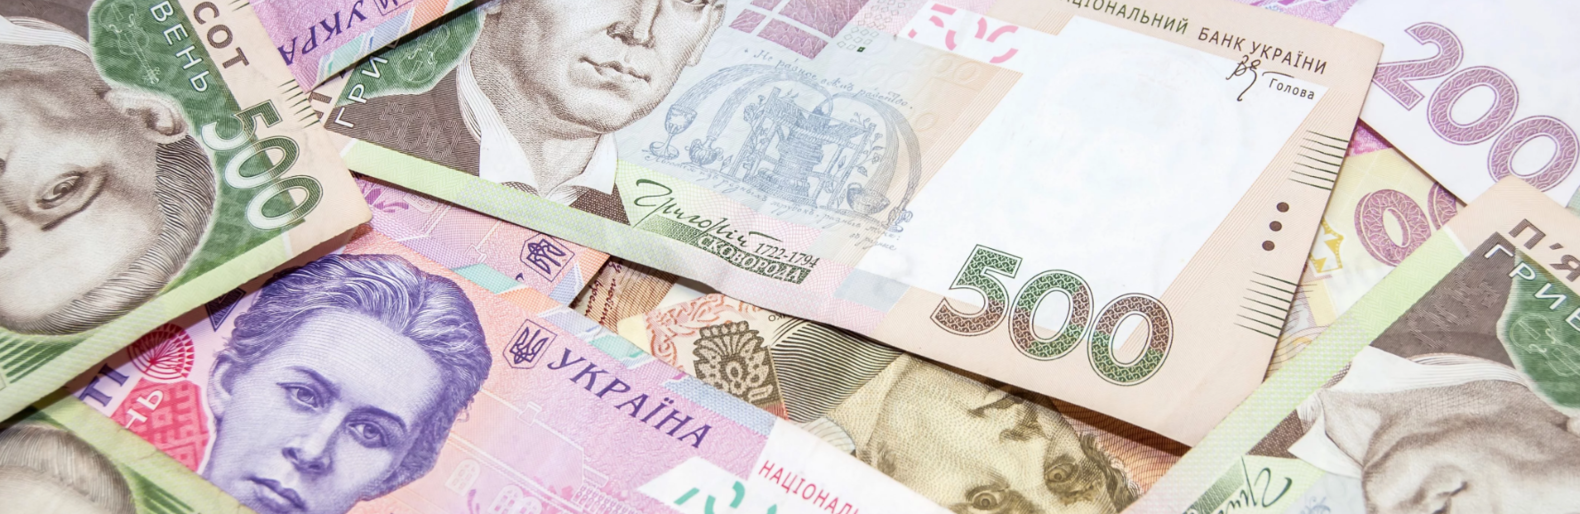 Кредит в украине без справки о доходах